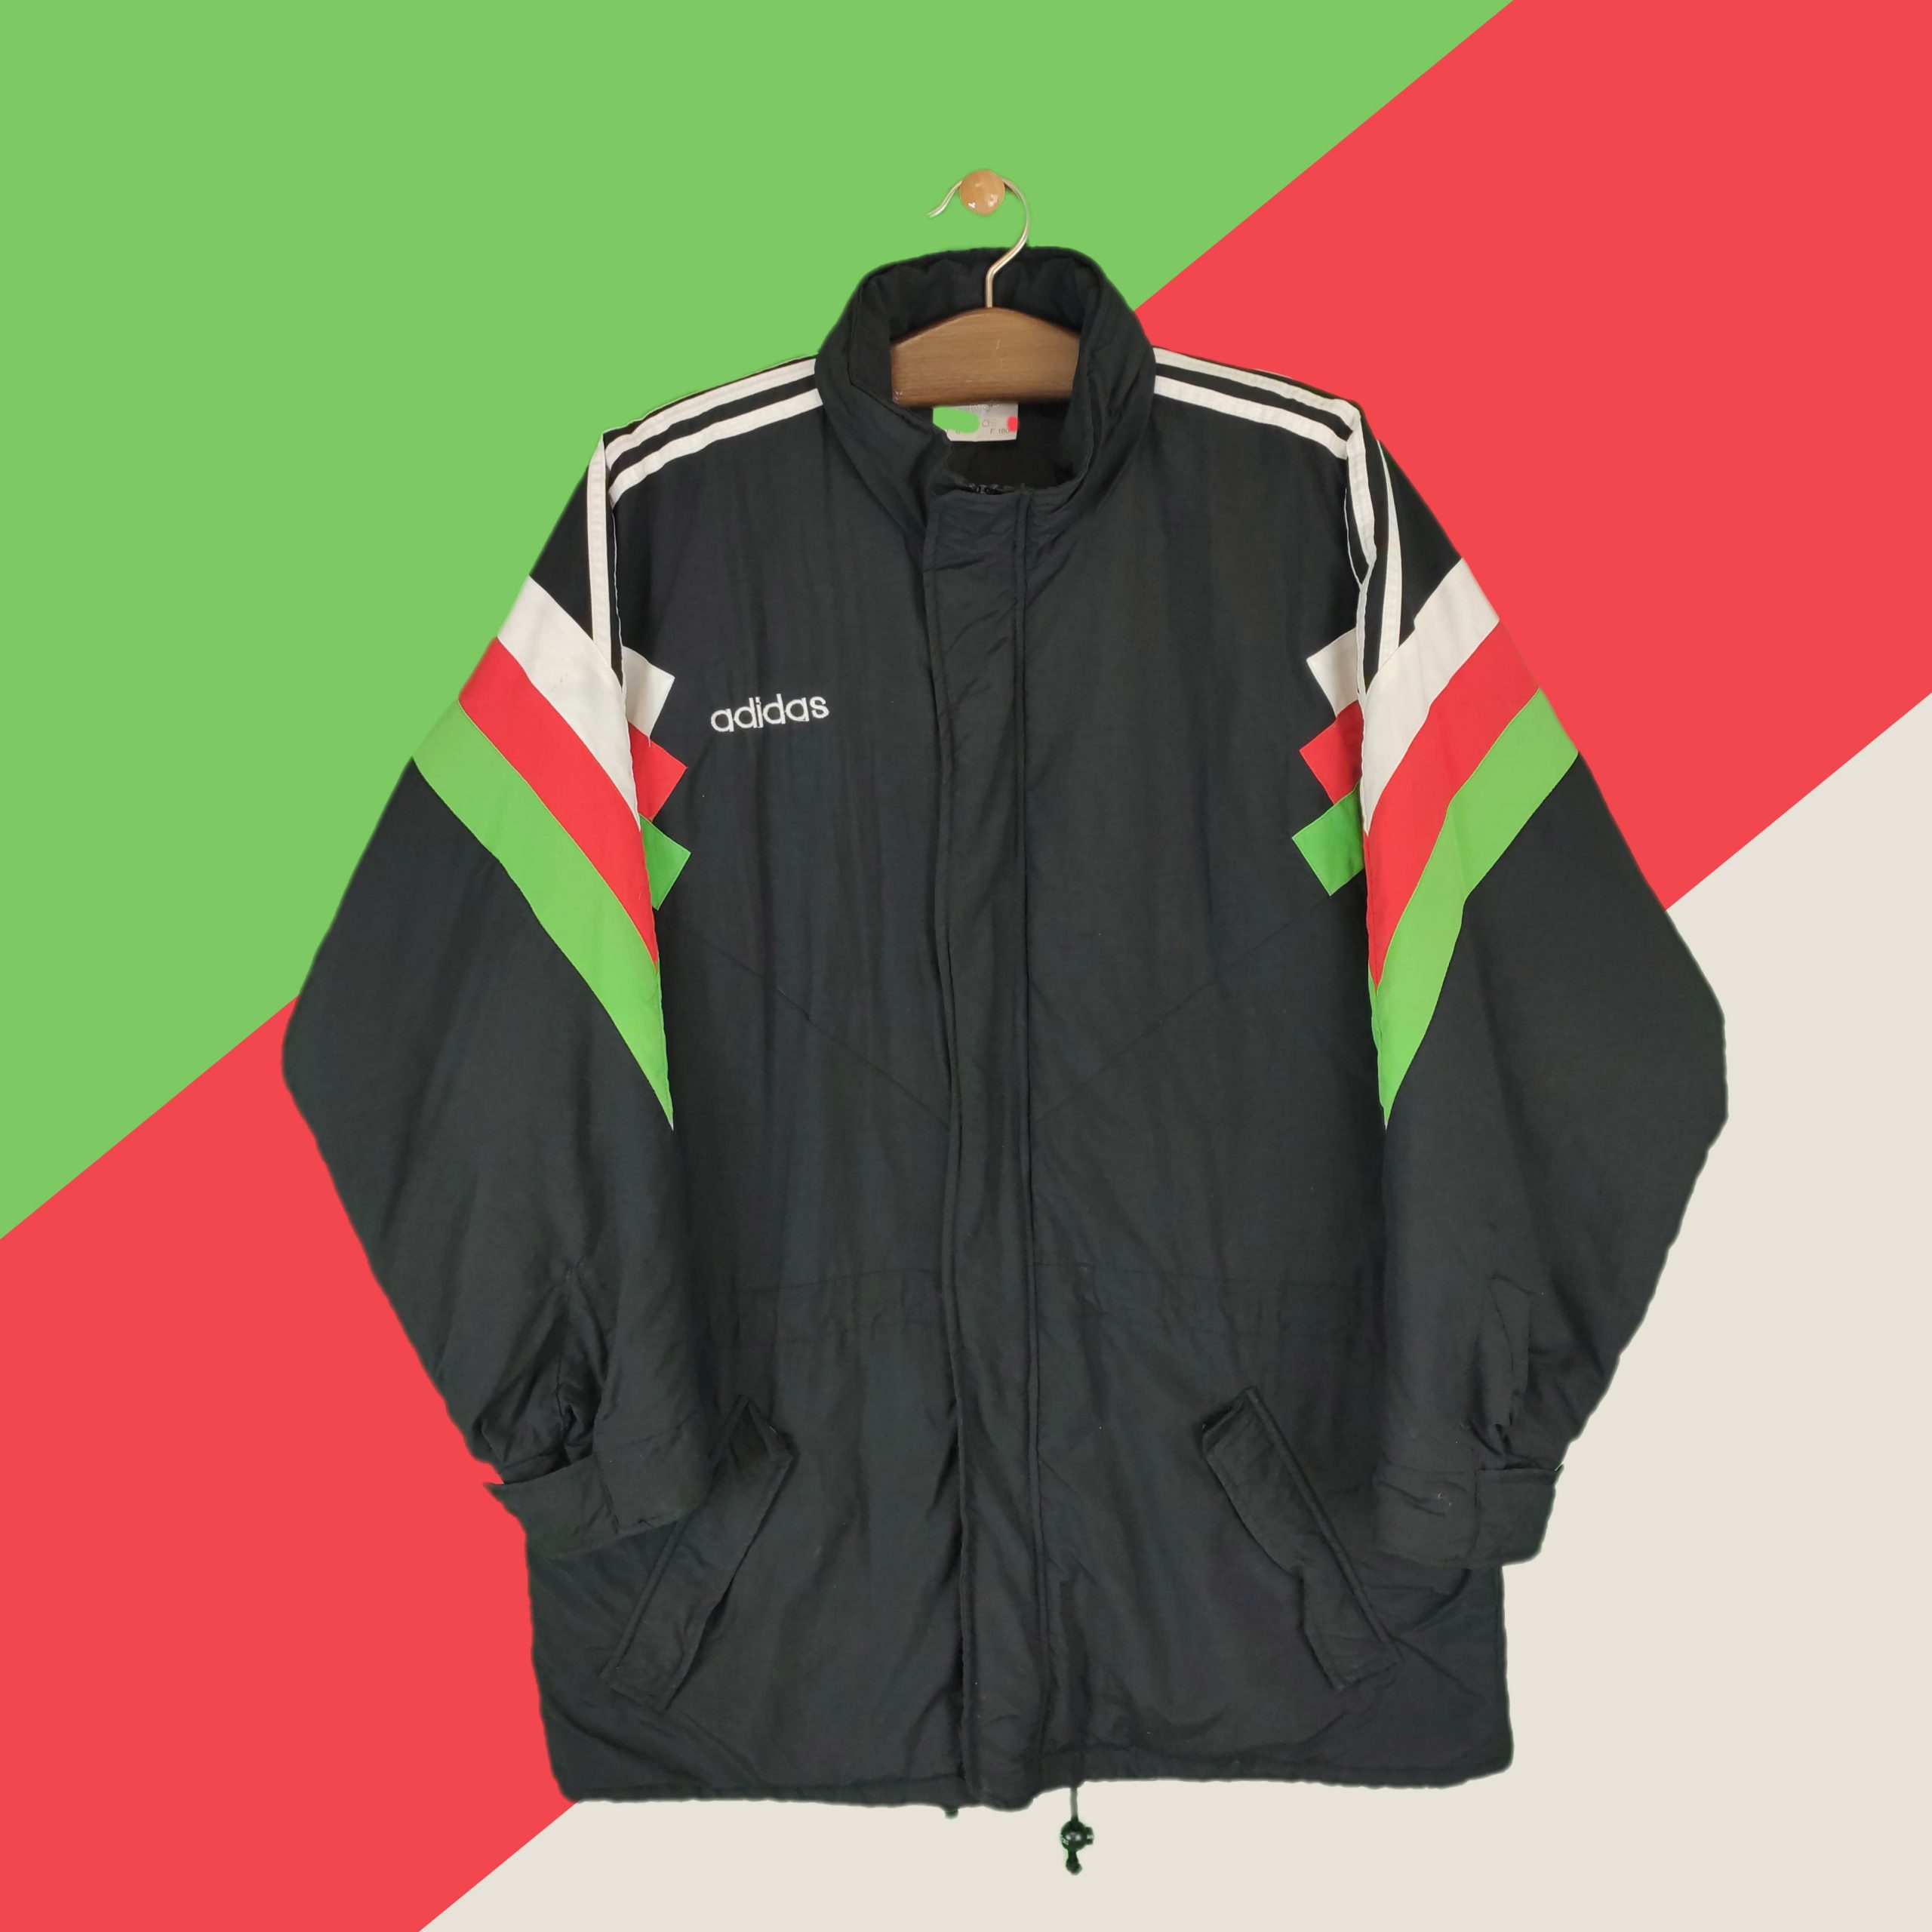 patrón básico rodillo Adidas "Tricolor" Retro Coat - BHD VINTAGE